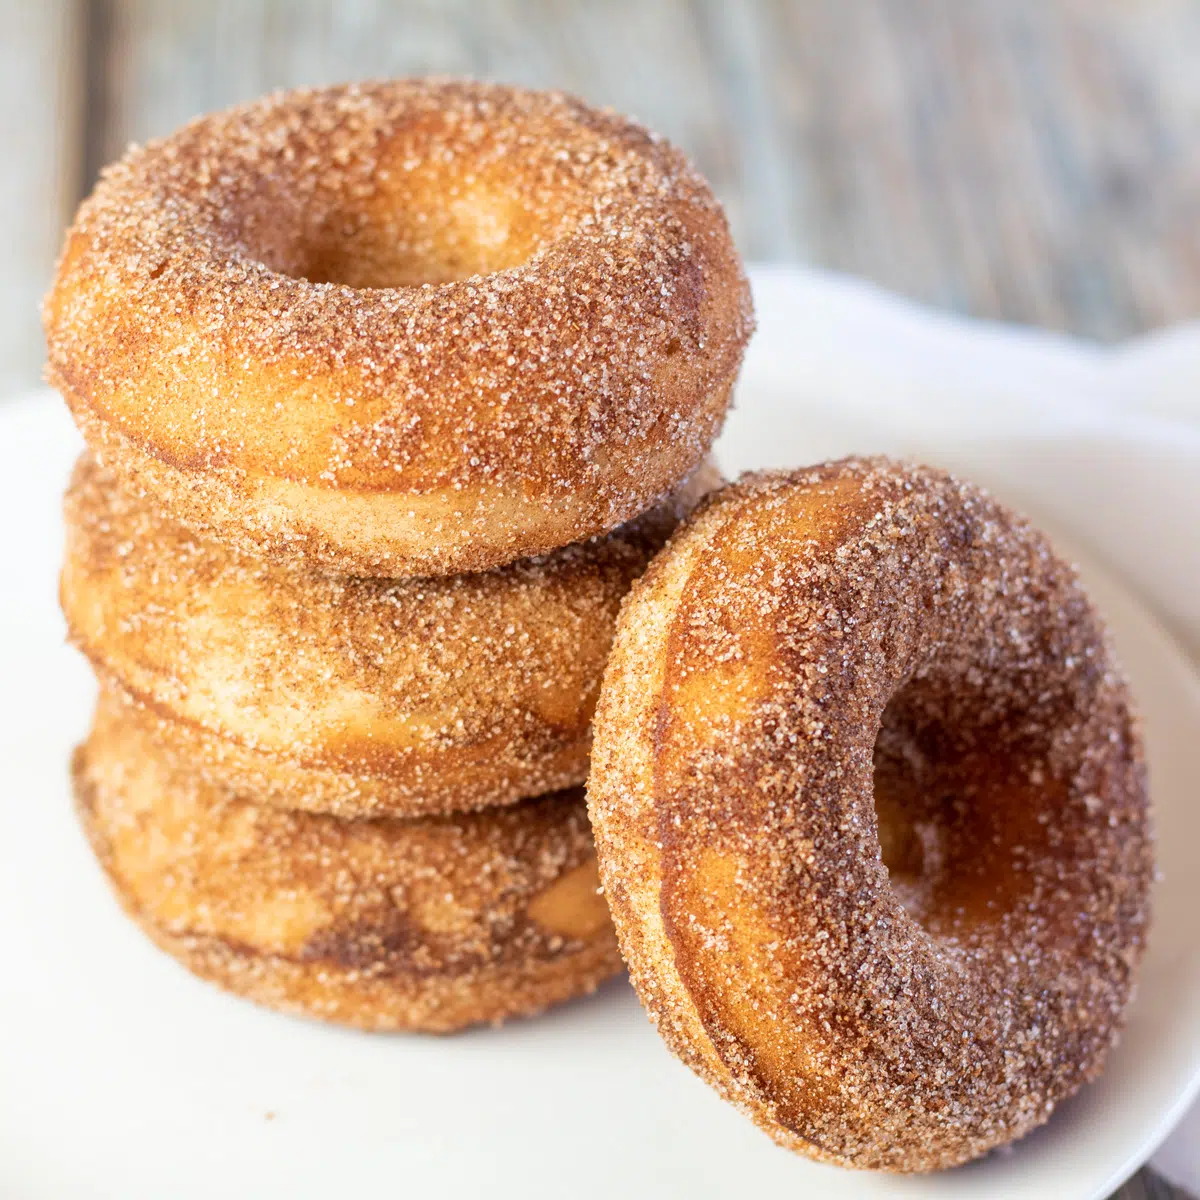 Imagen cuadrada de donuts horneados con azúcar de canela apilados en un plato blanco.